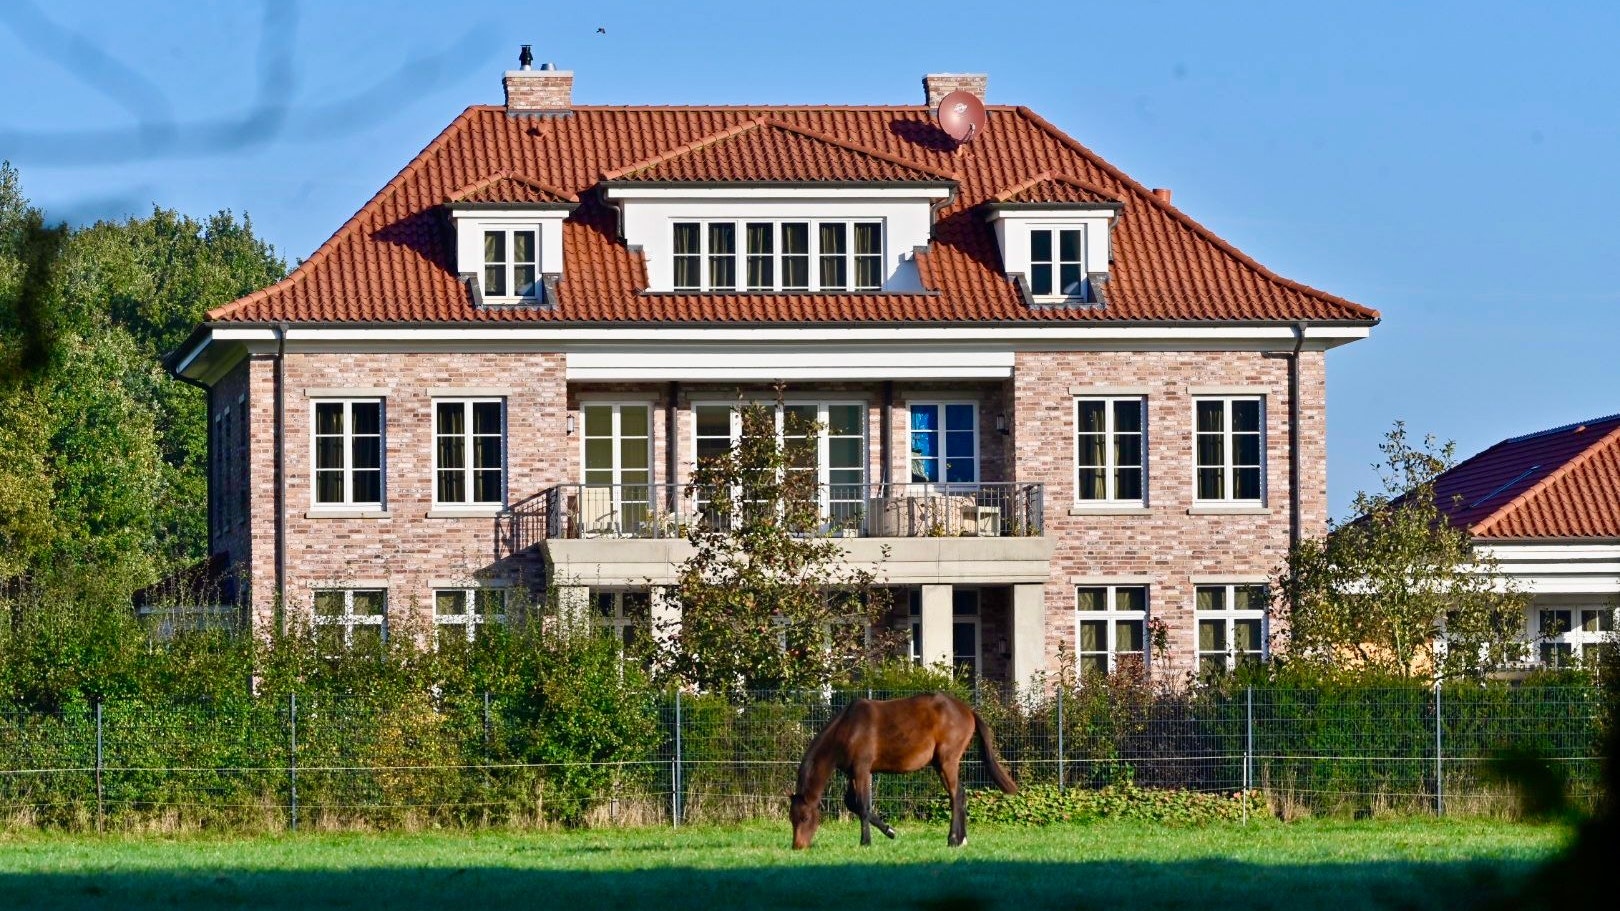 Das Pferd gehört nicht zum Angebot: Wer die Villa kauft, muss aber mindestens eines auf dem Grundstück halten. Foto: M. Niehues